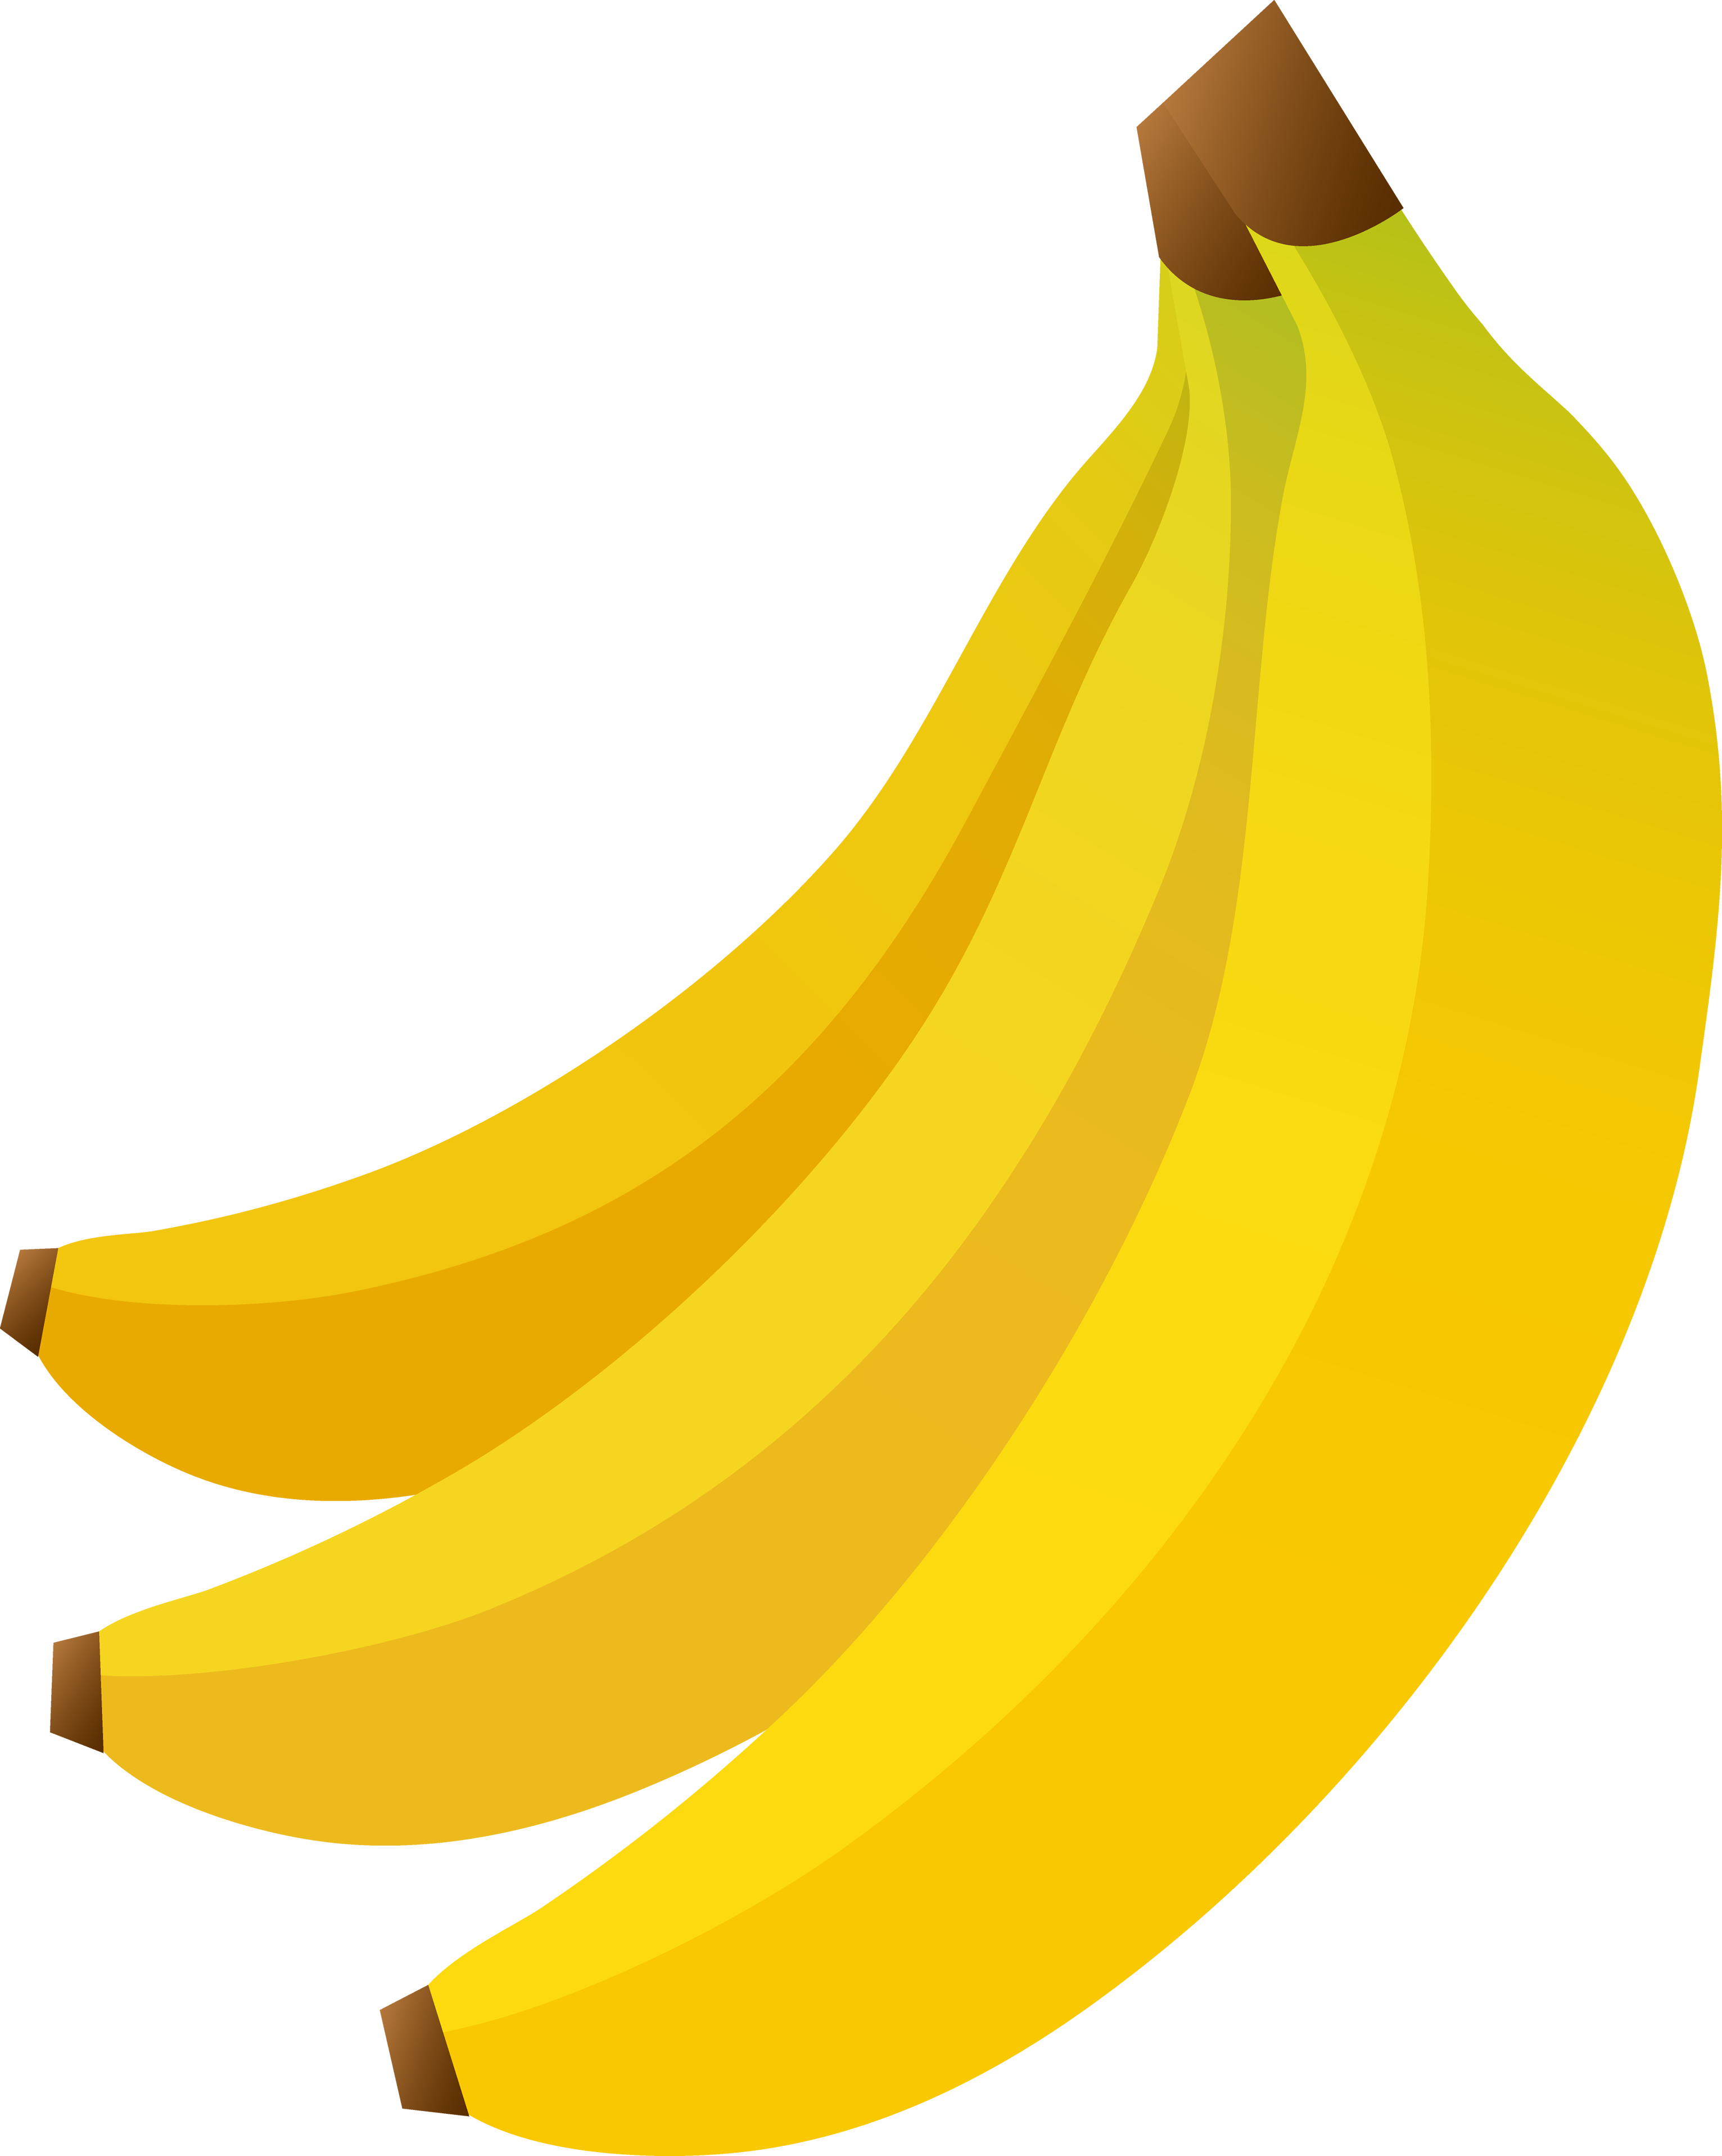 Banana's PNG Image